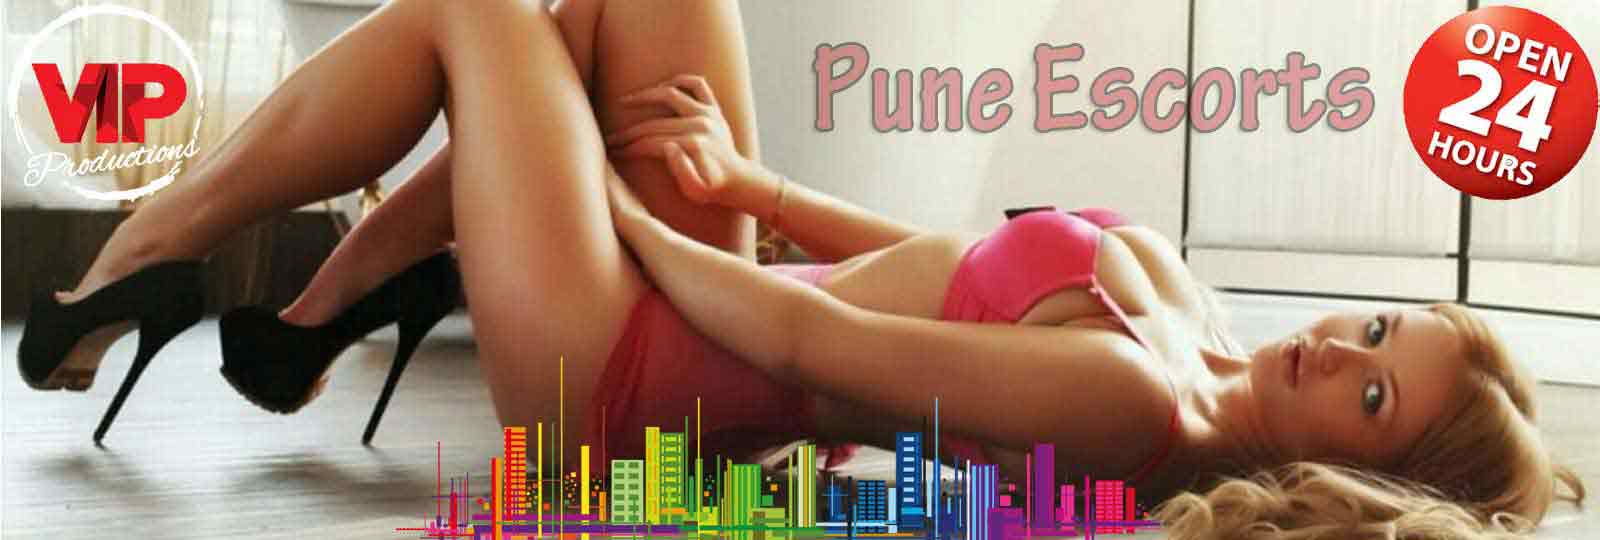 Escort in Pune